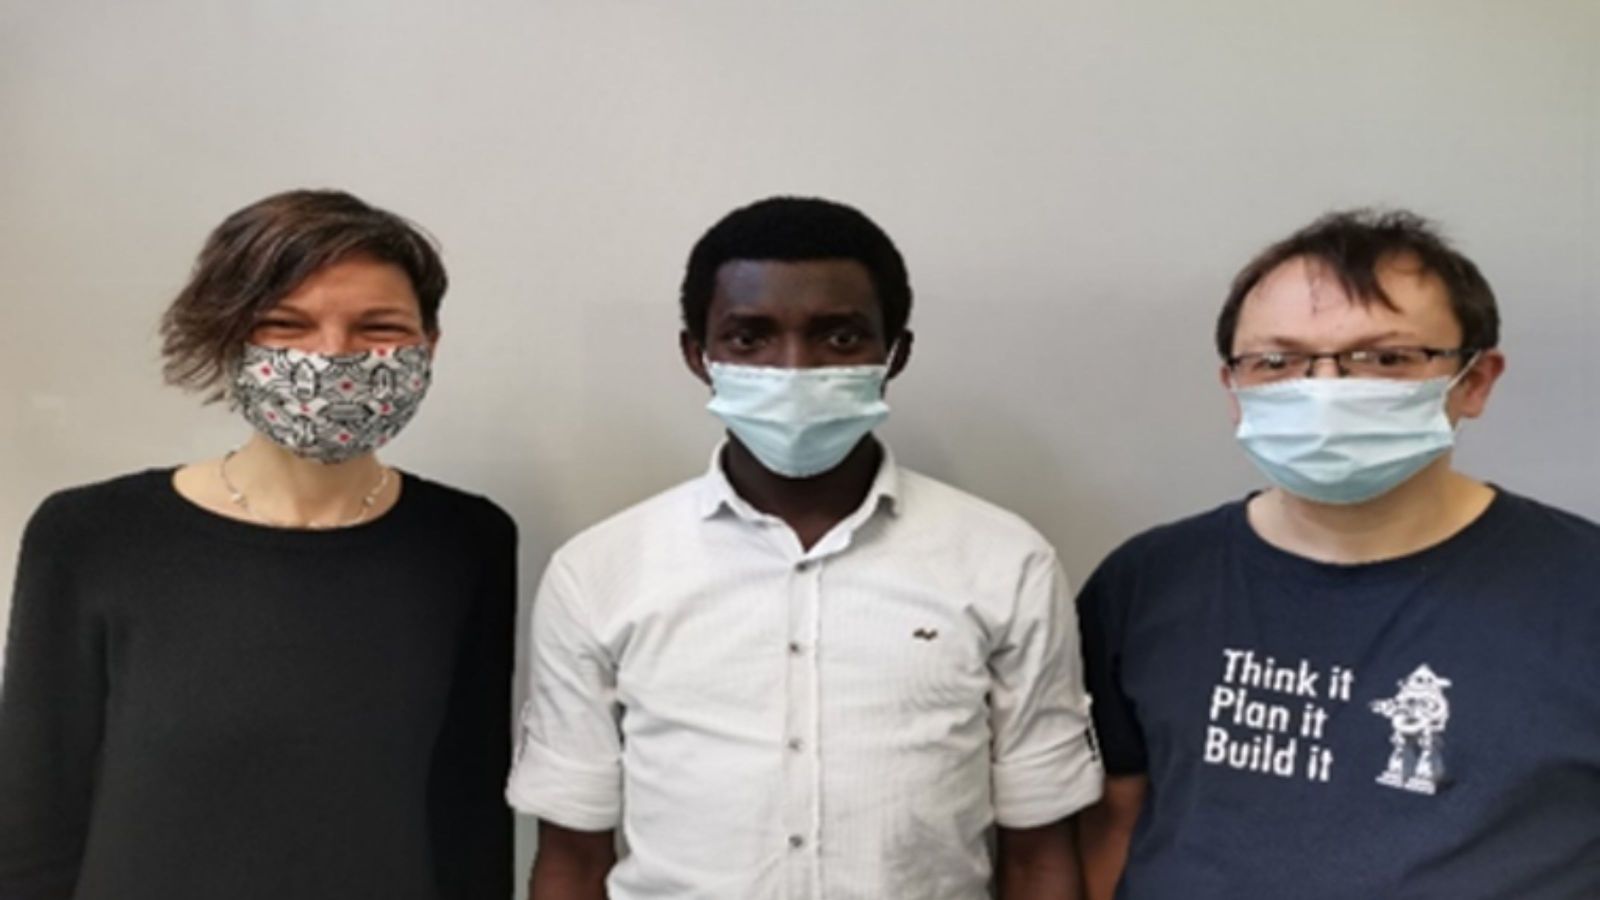 Three people wearing masks, one white female, one dark-skinned male, one white male.